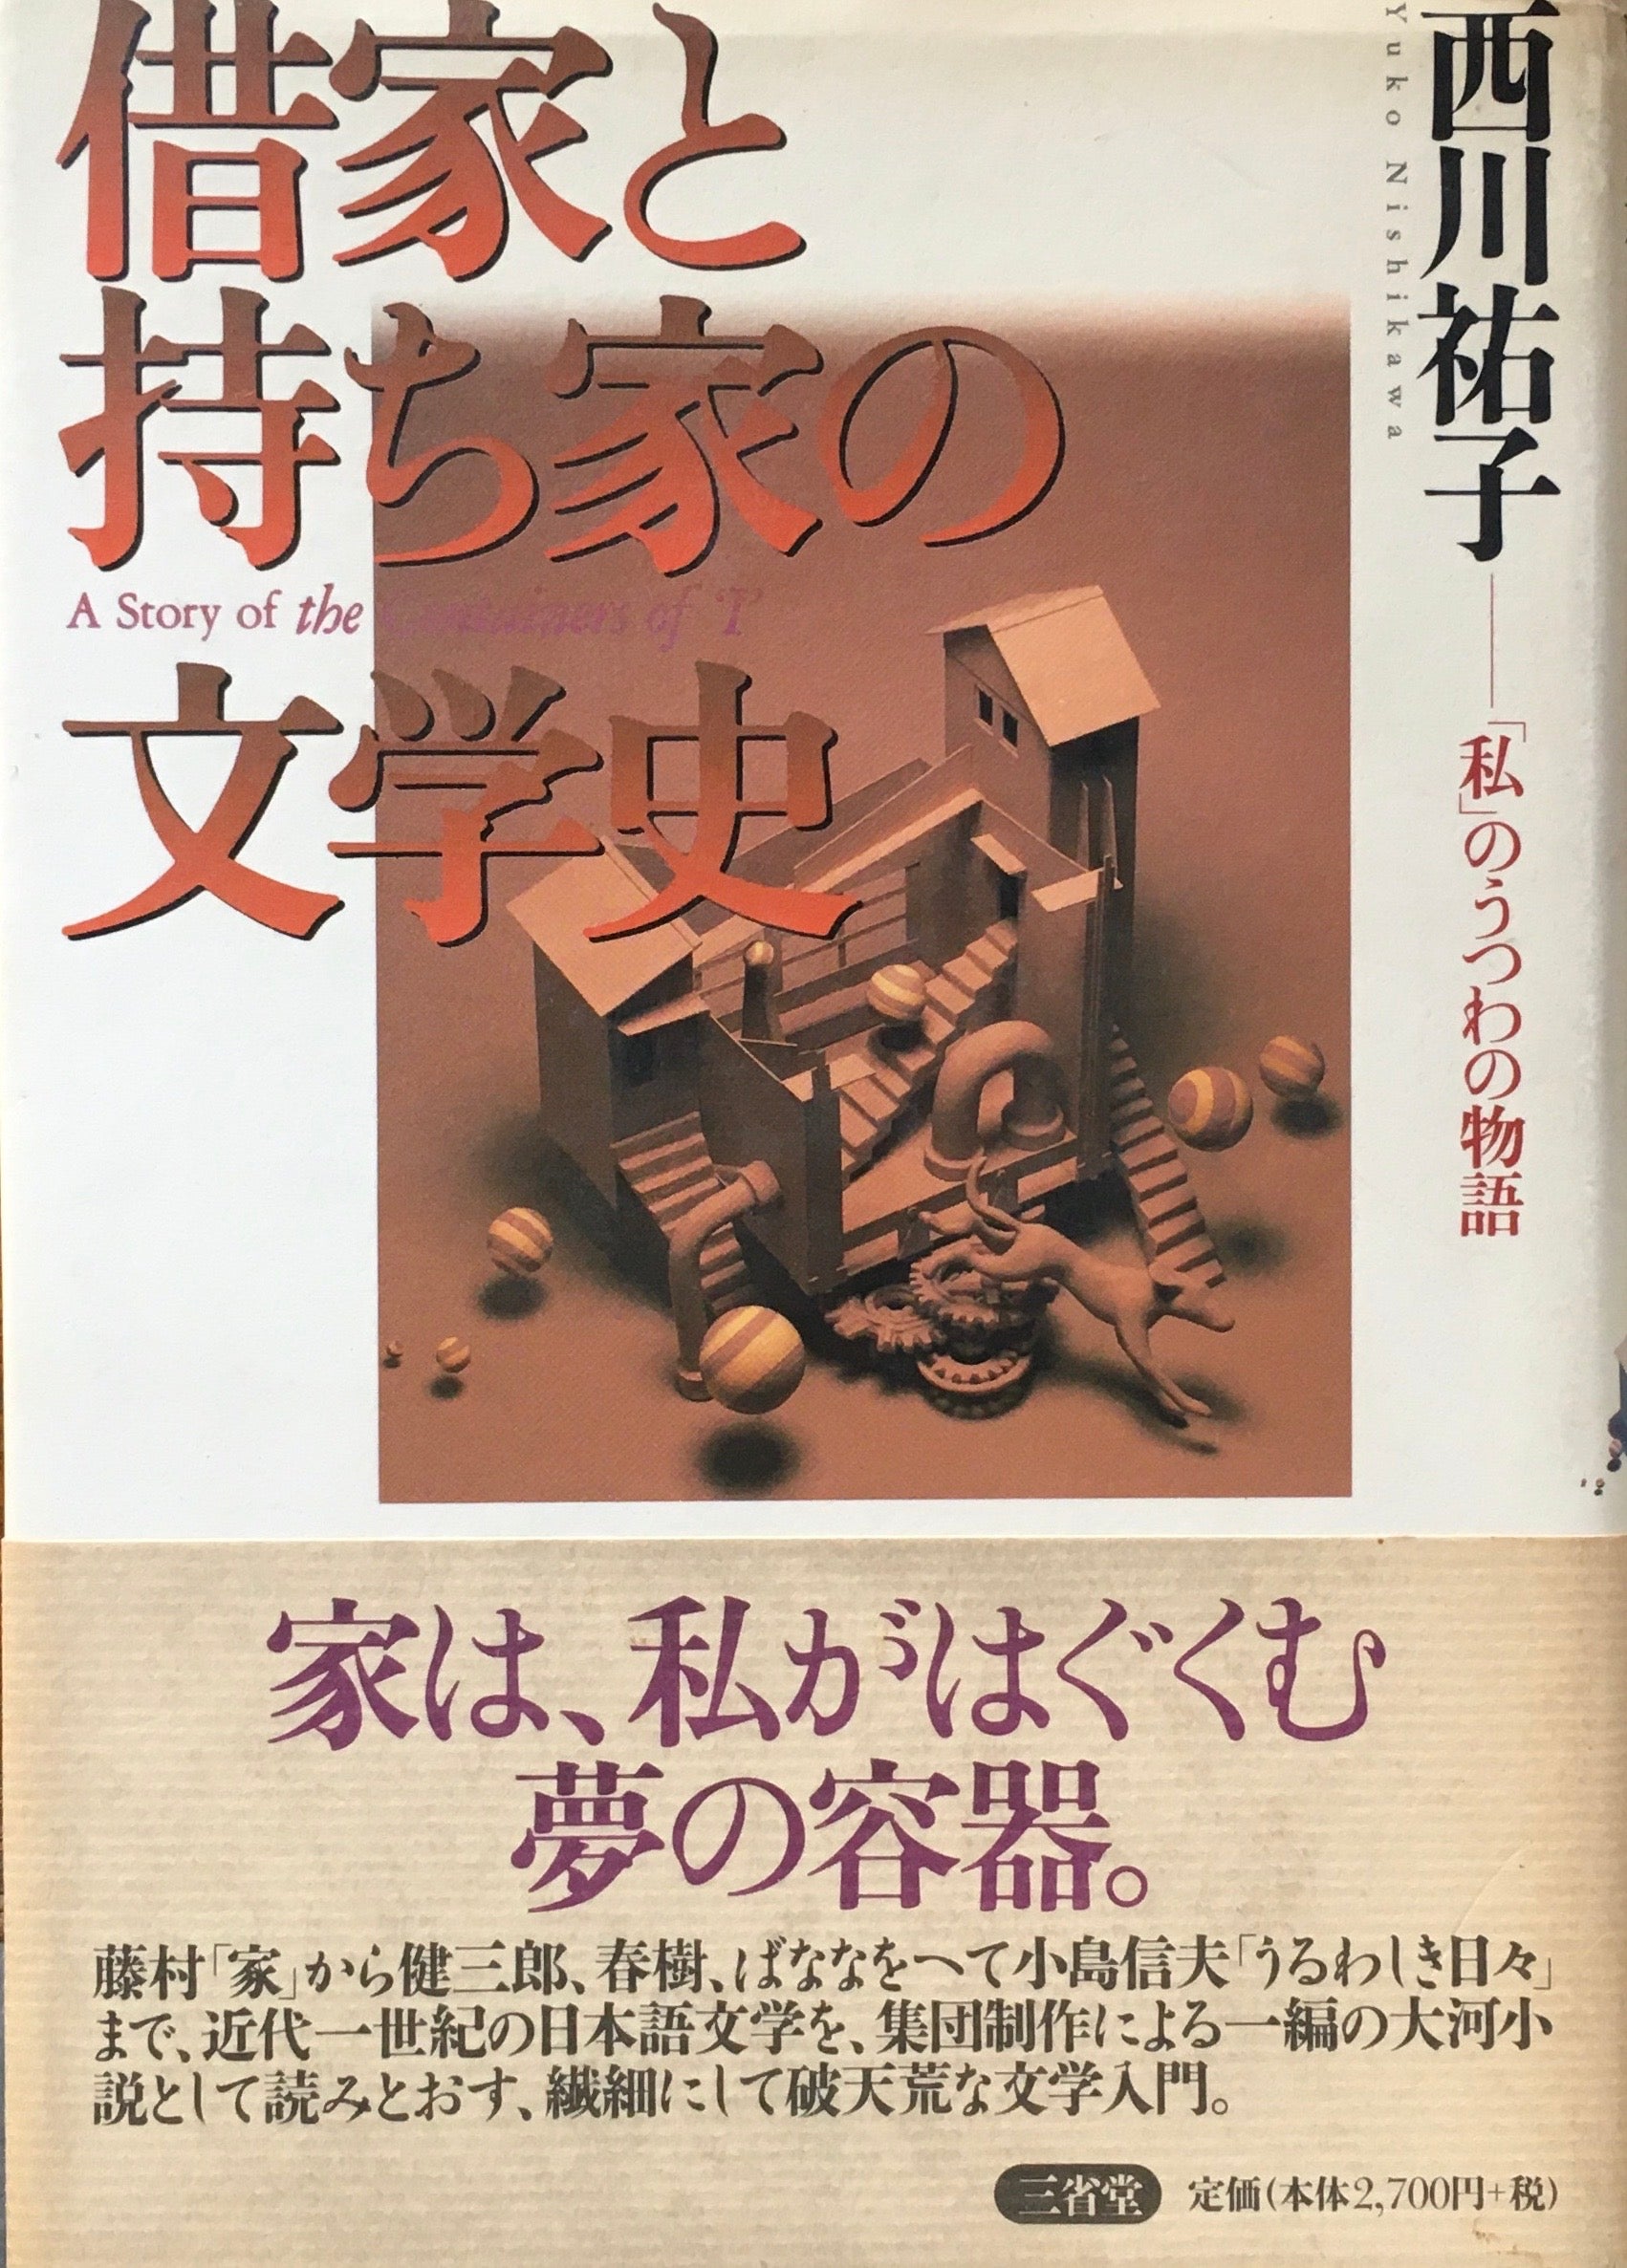 借家と持ち家の文学史 「私」のうつわの物語 西川祐子 – smokebooks shop